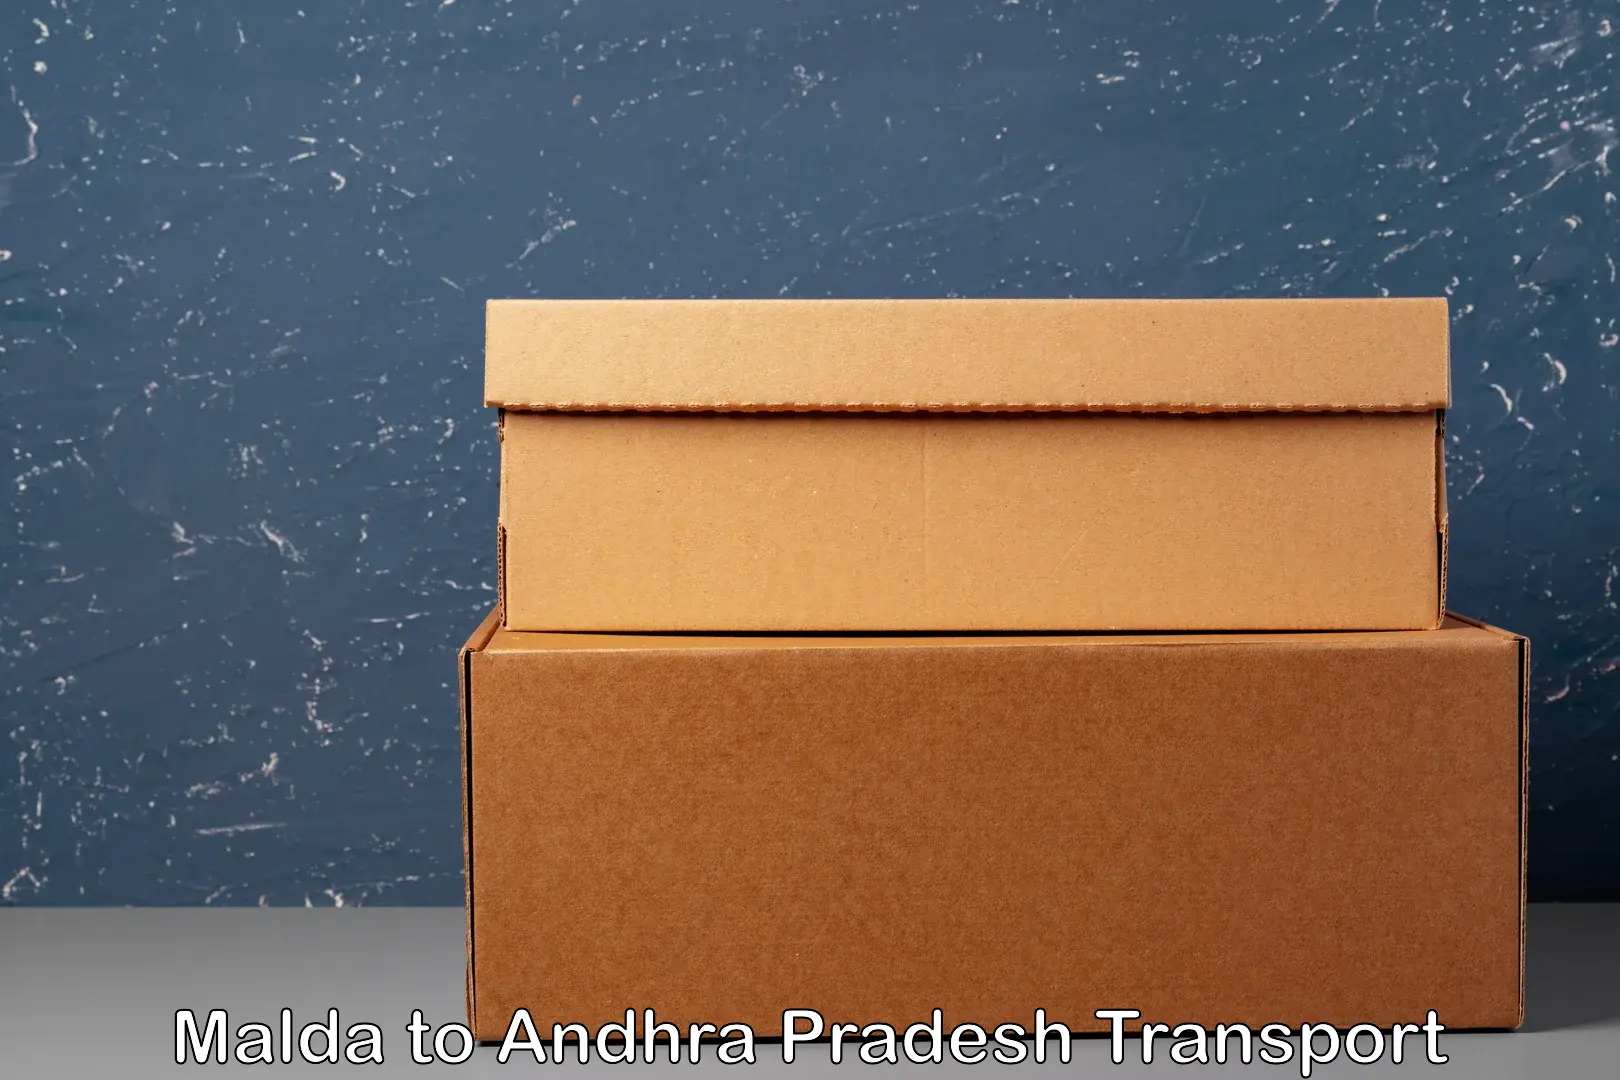 Land transport services Malda to Andhra Pradesh